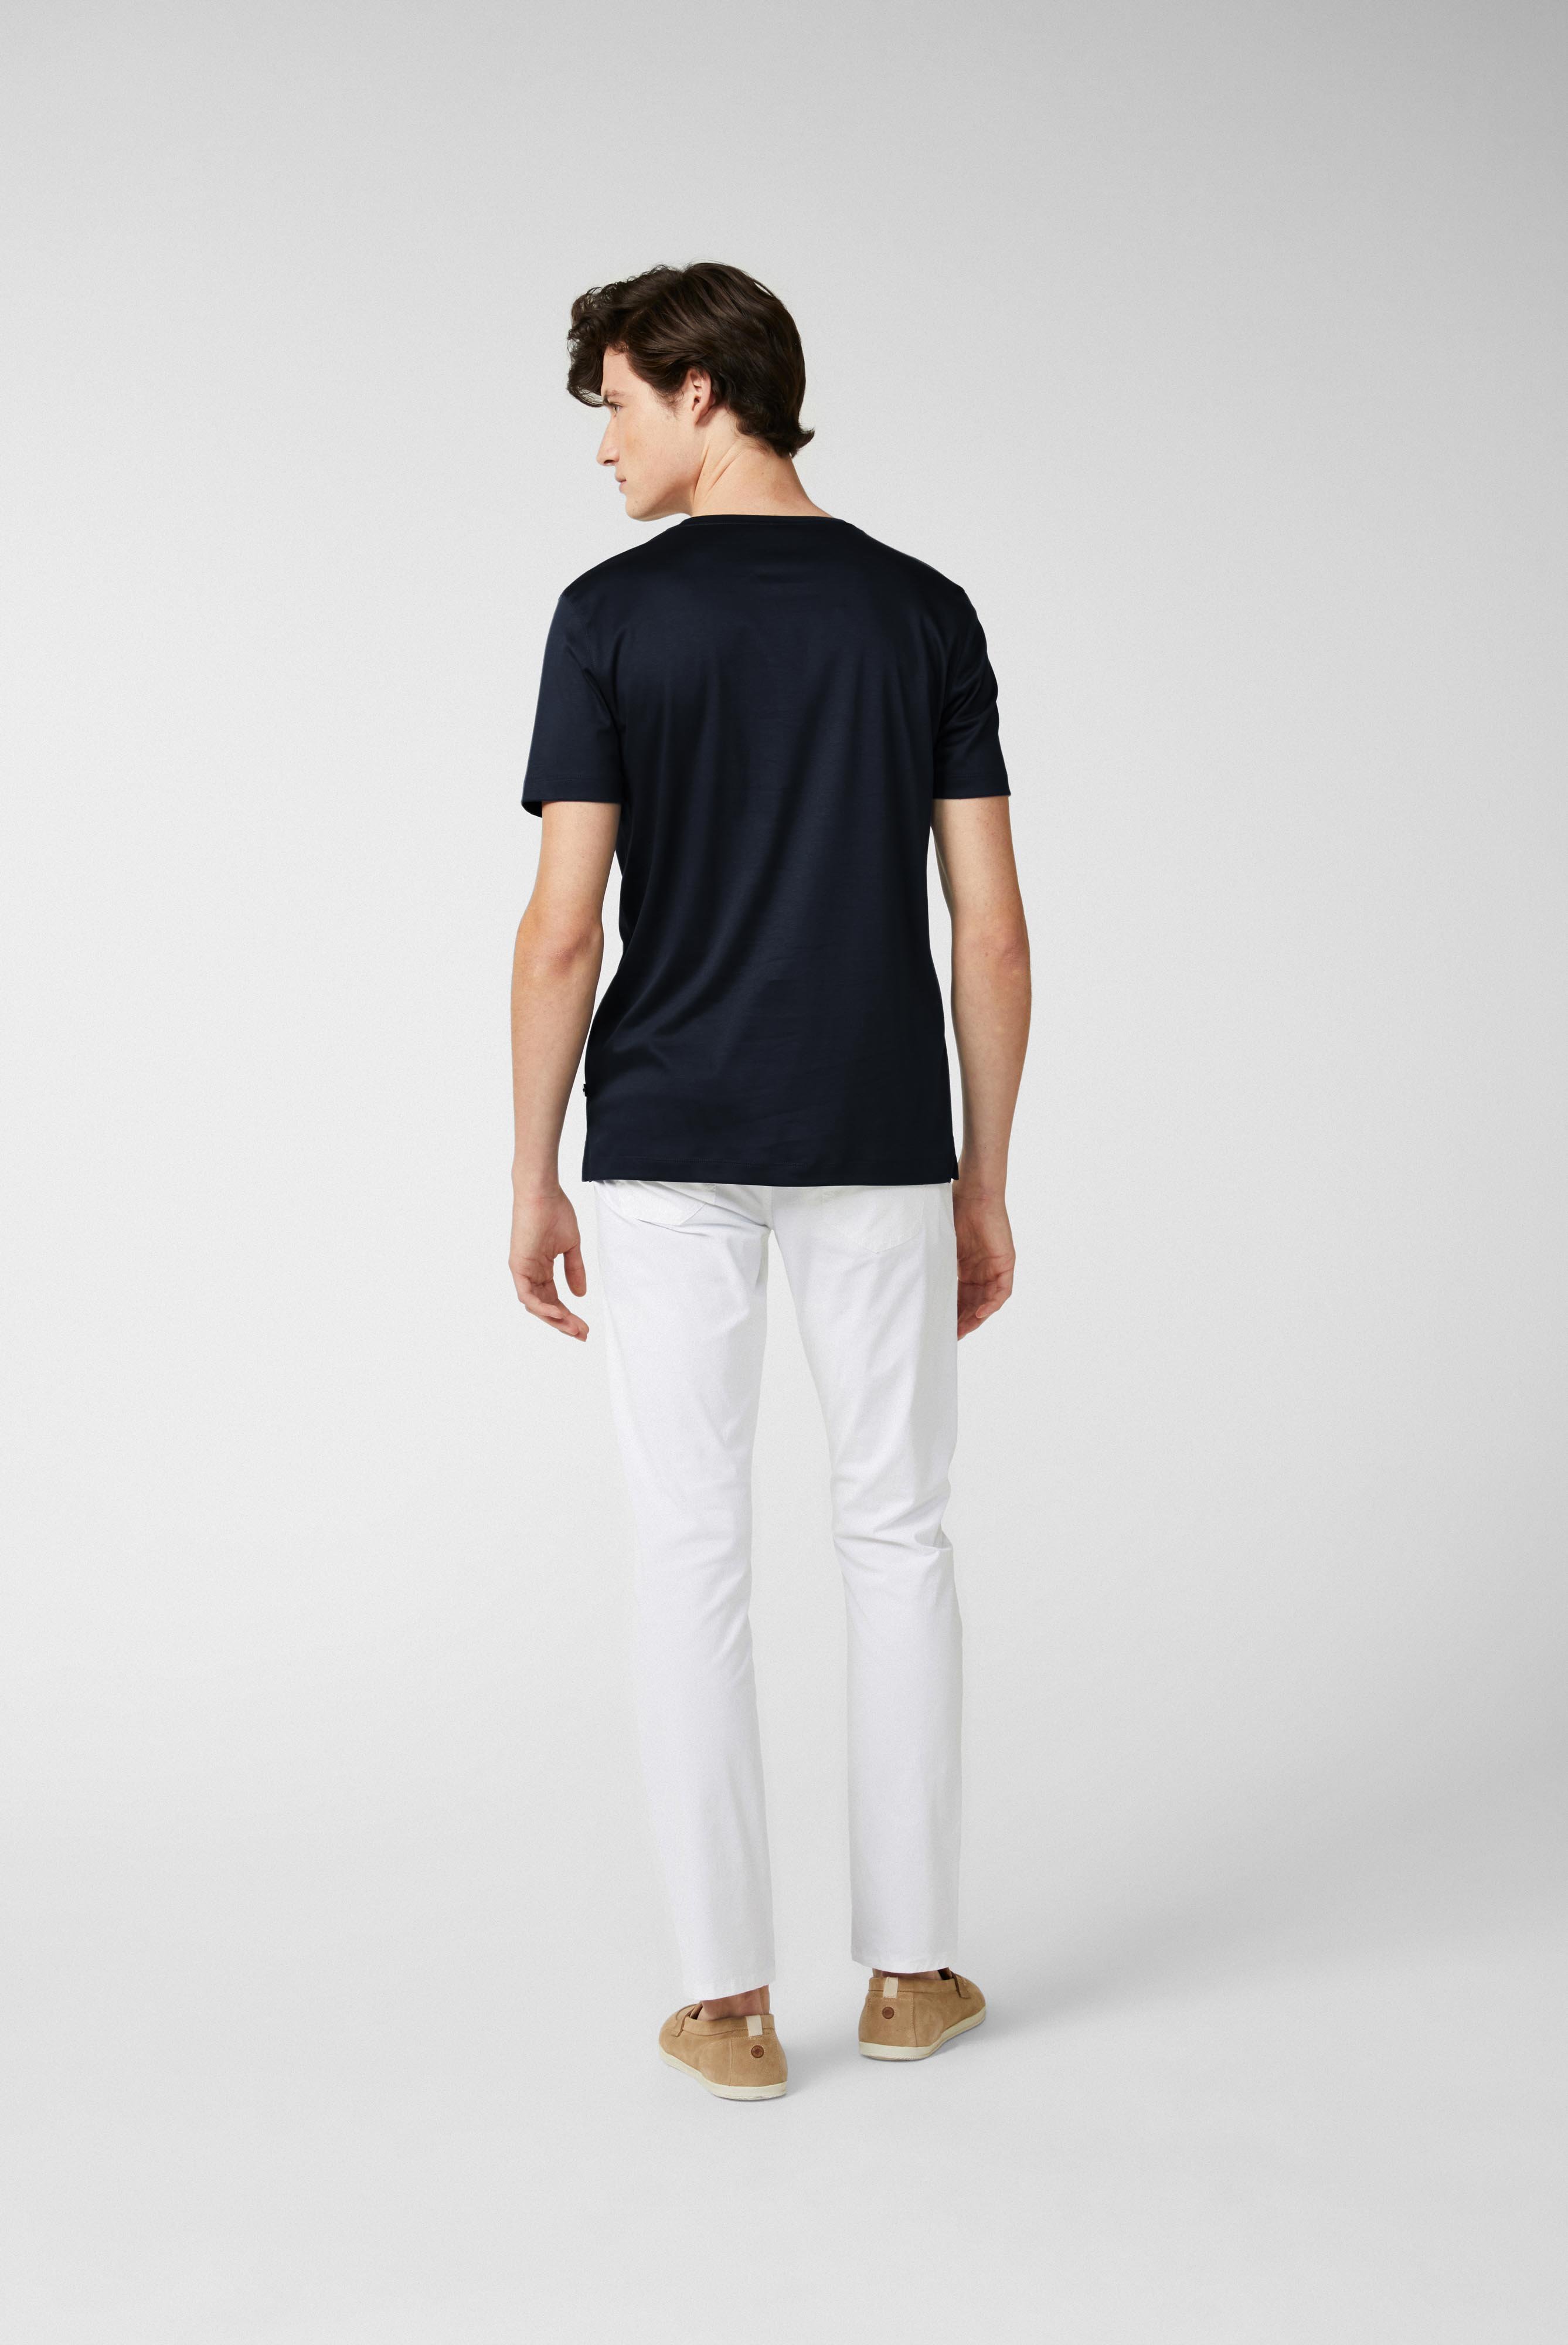 T-Shirts+Rundhals Jersey T-Shirt Slim Fit+20.1717.UX.180031.790.X4L